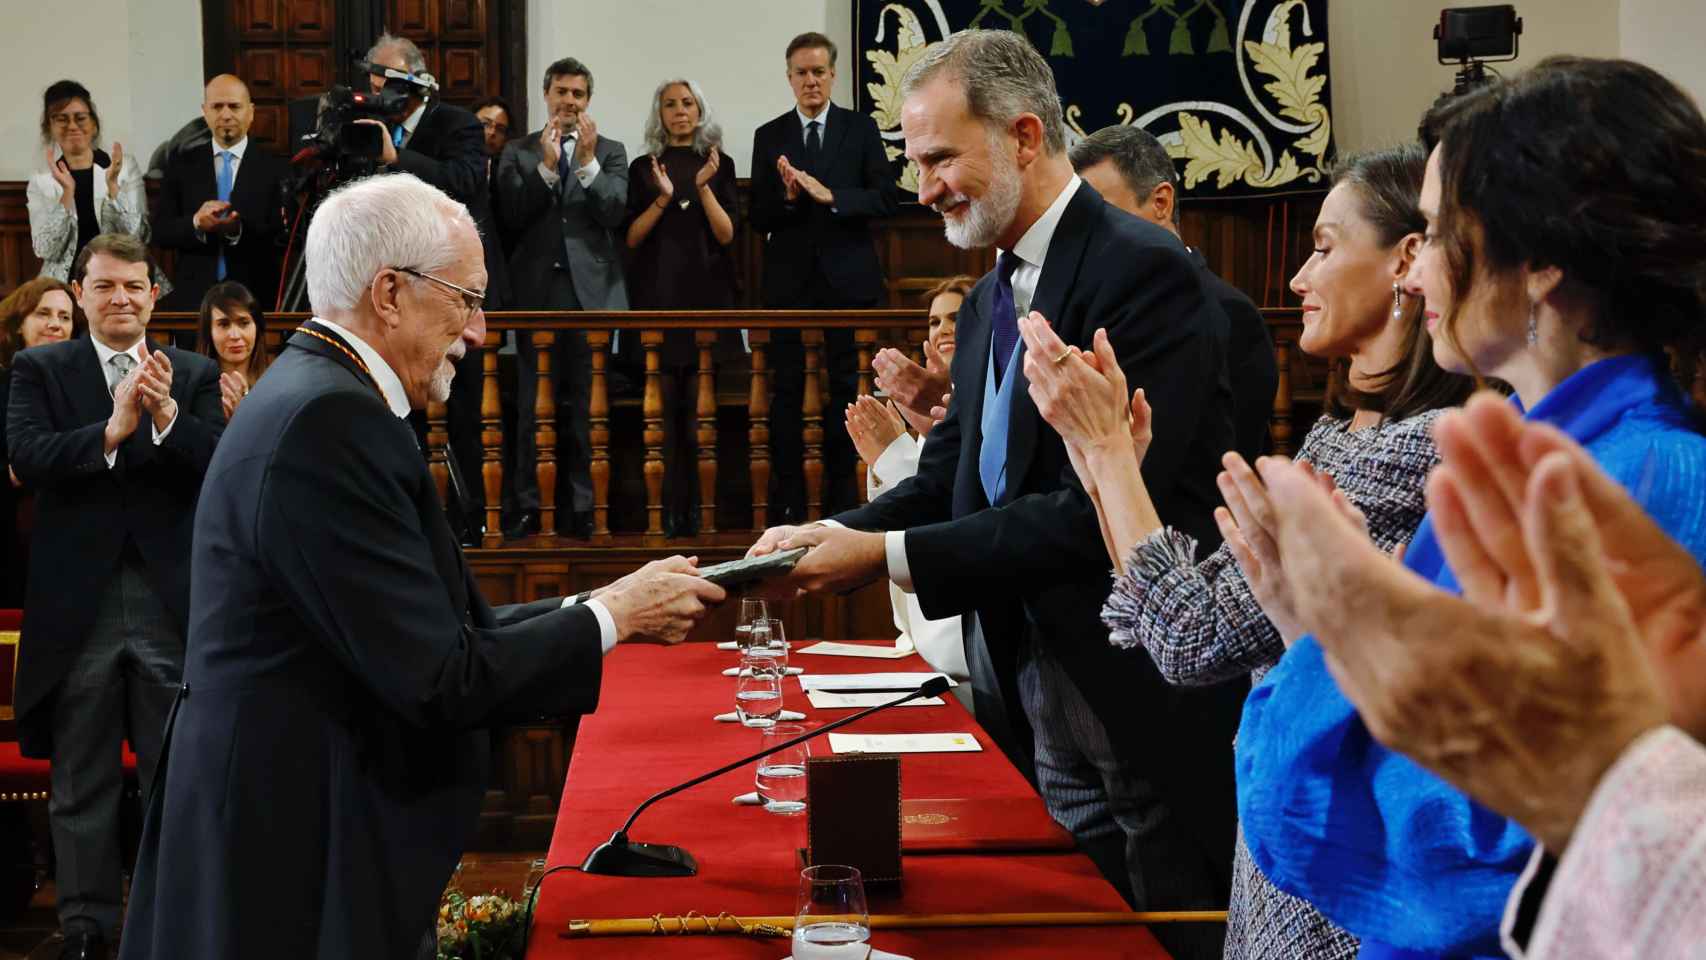 El leonés Luis Mateo Díez recibe el Premio Cervantes de manos de los reyes